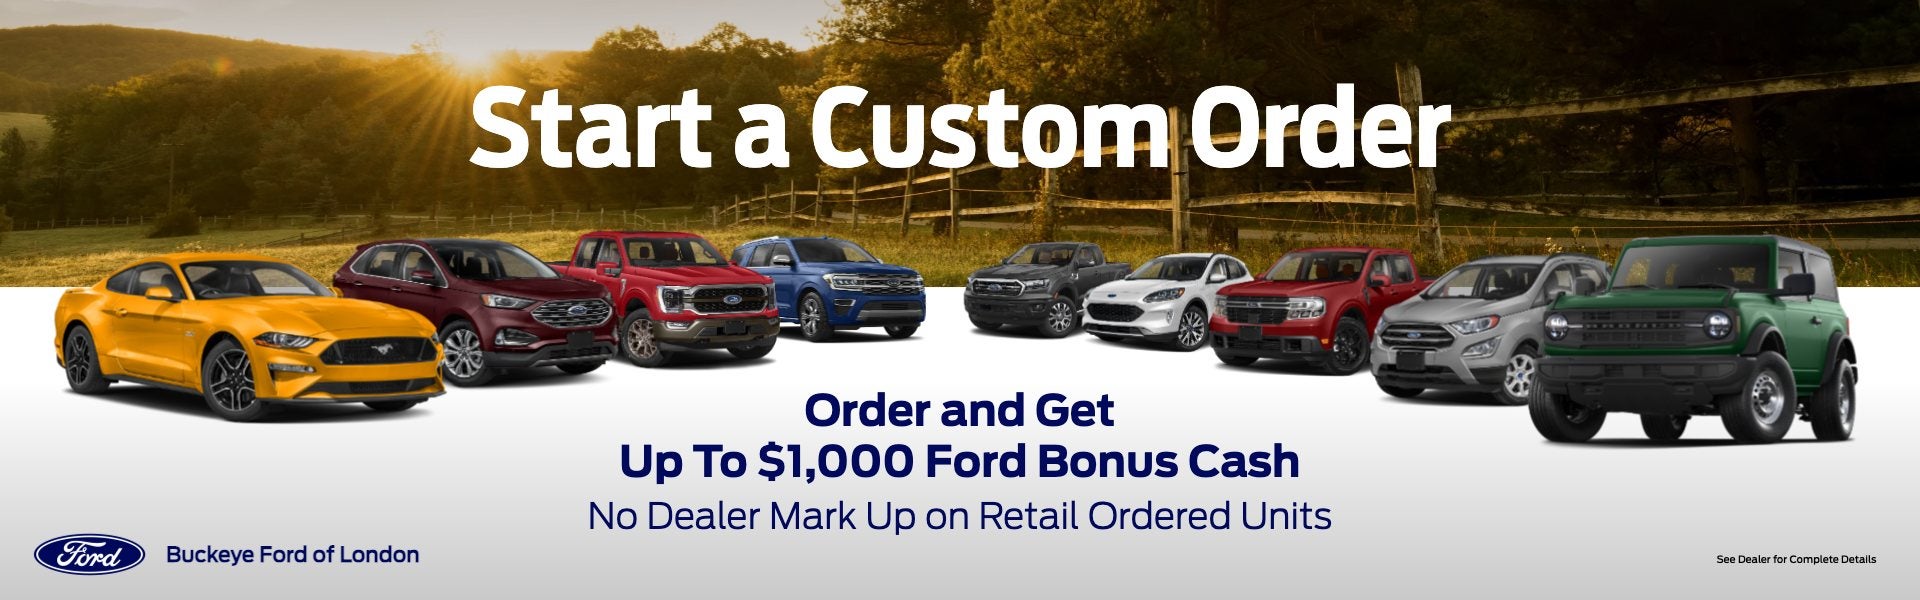 Start a Custom Order